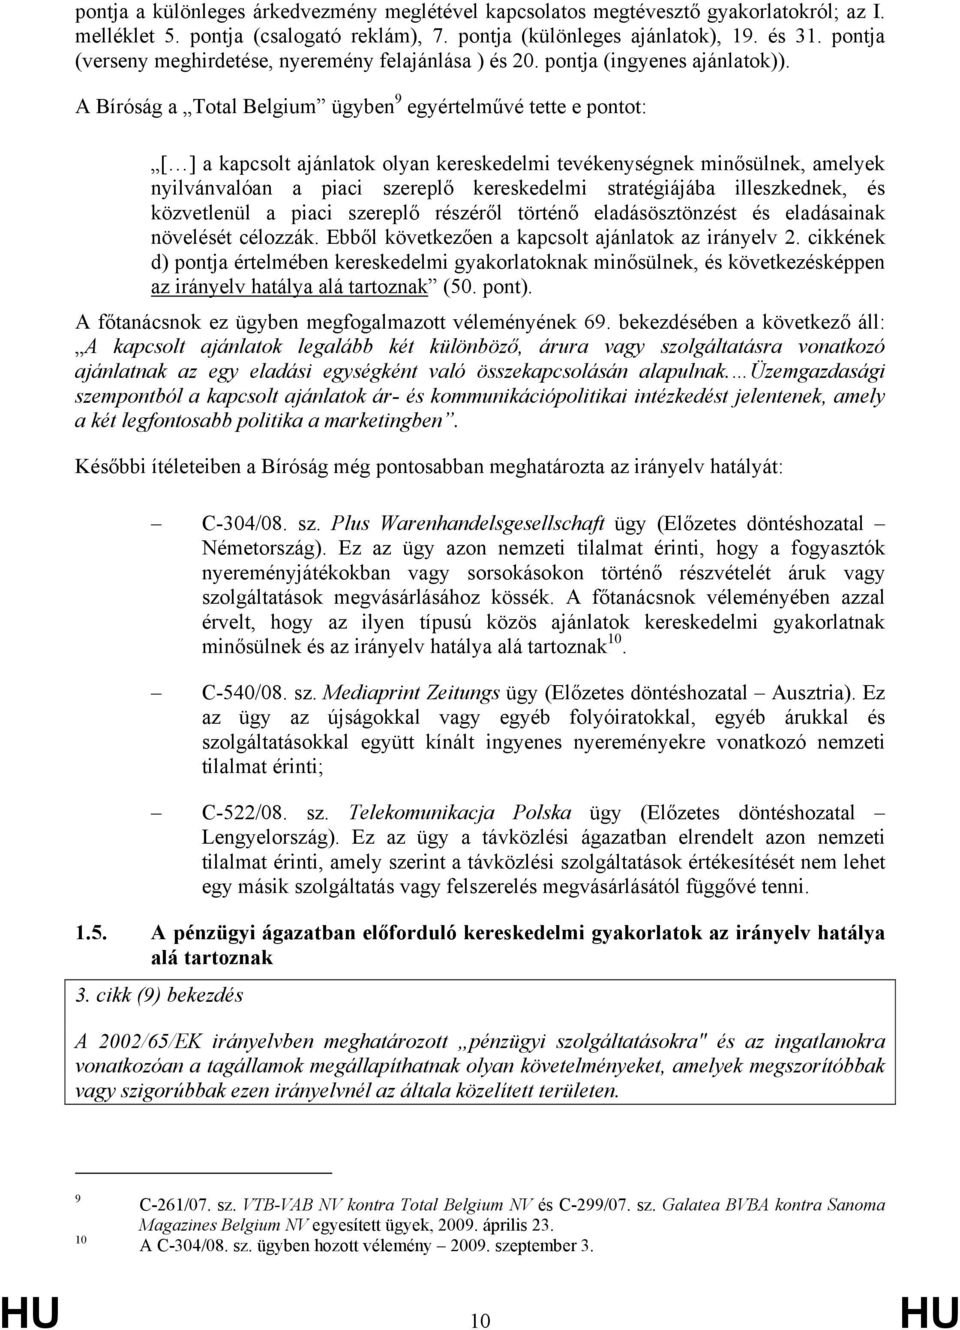 A Bíróság a Total Belgium ügyben 9 egyértelművé tette e pontot: [ ] a kapcsolt ajánlatok olyan kereskedelmi tevékenységnek minősülnek, amelyek nyilvánvalóan a piaci szereplő kereskedelmi